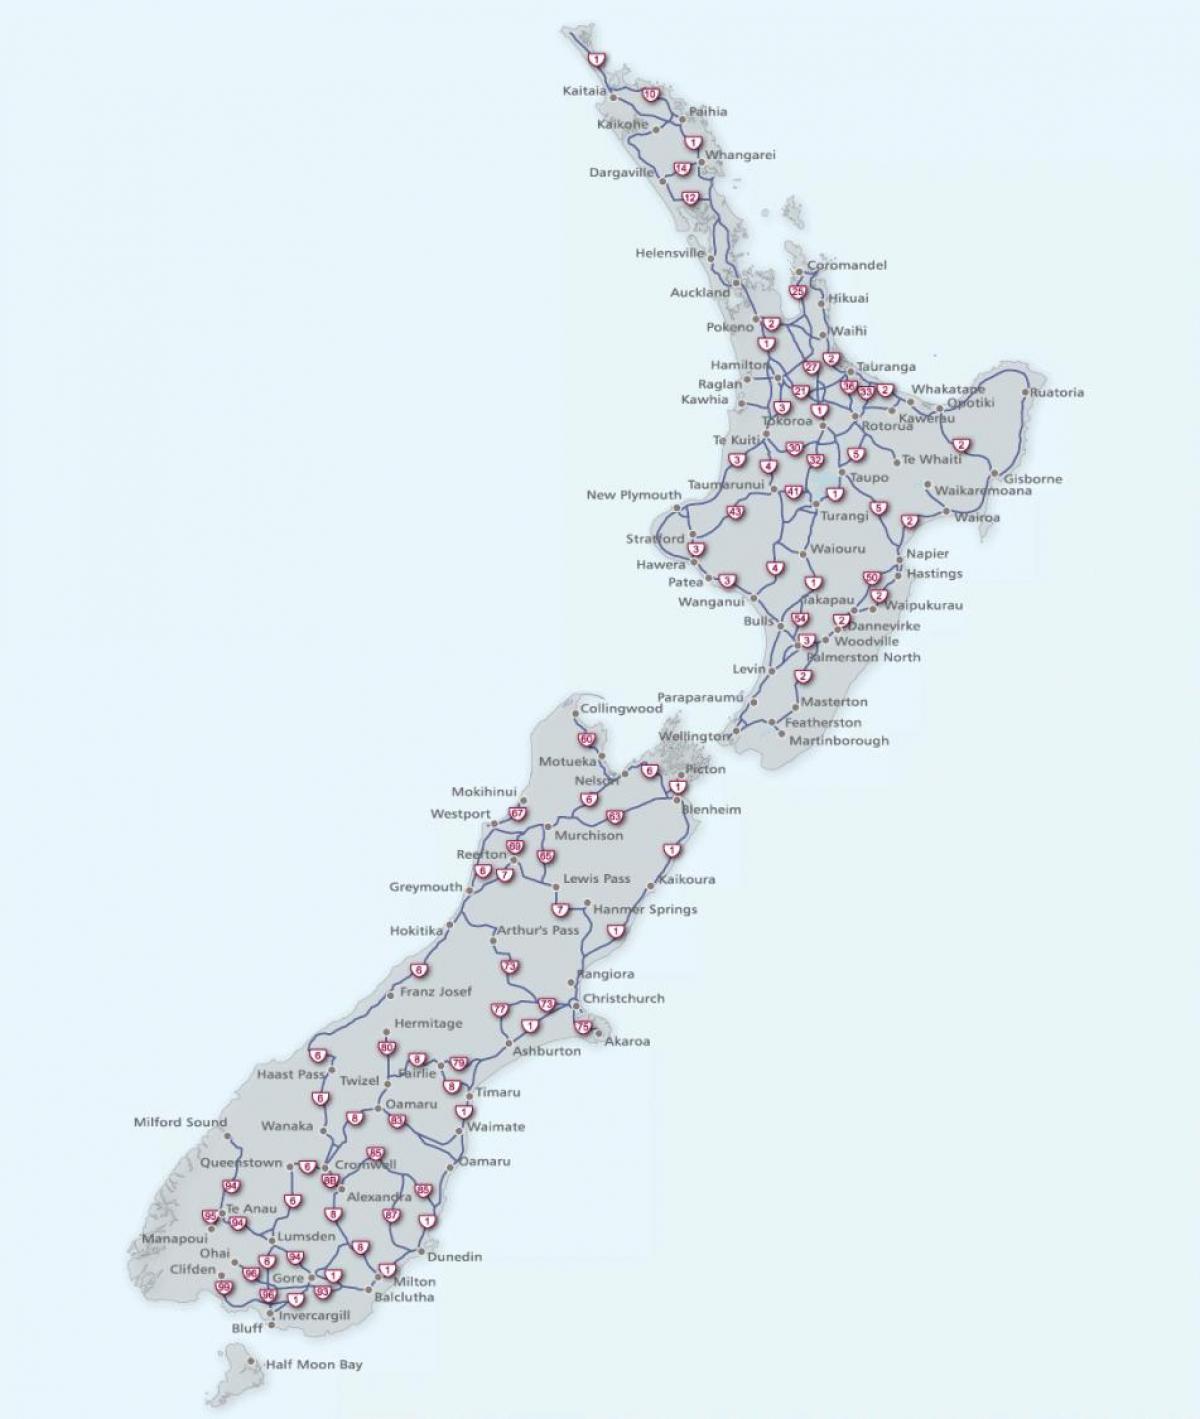 Նոր Զելանդիա ճանապարհների քարտեզի վրա